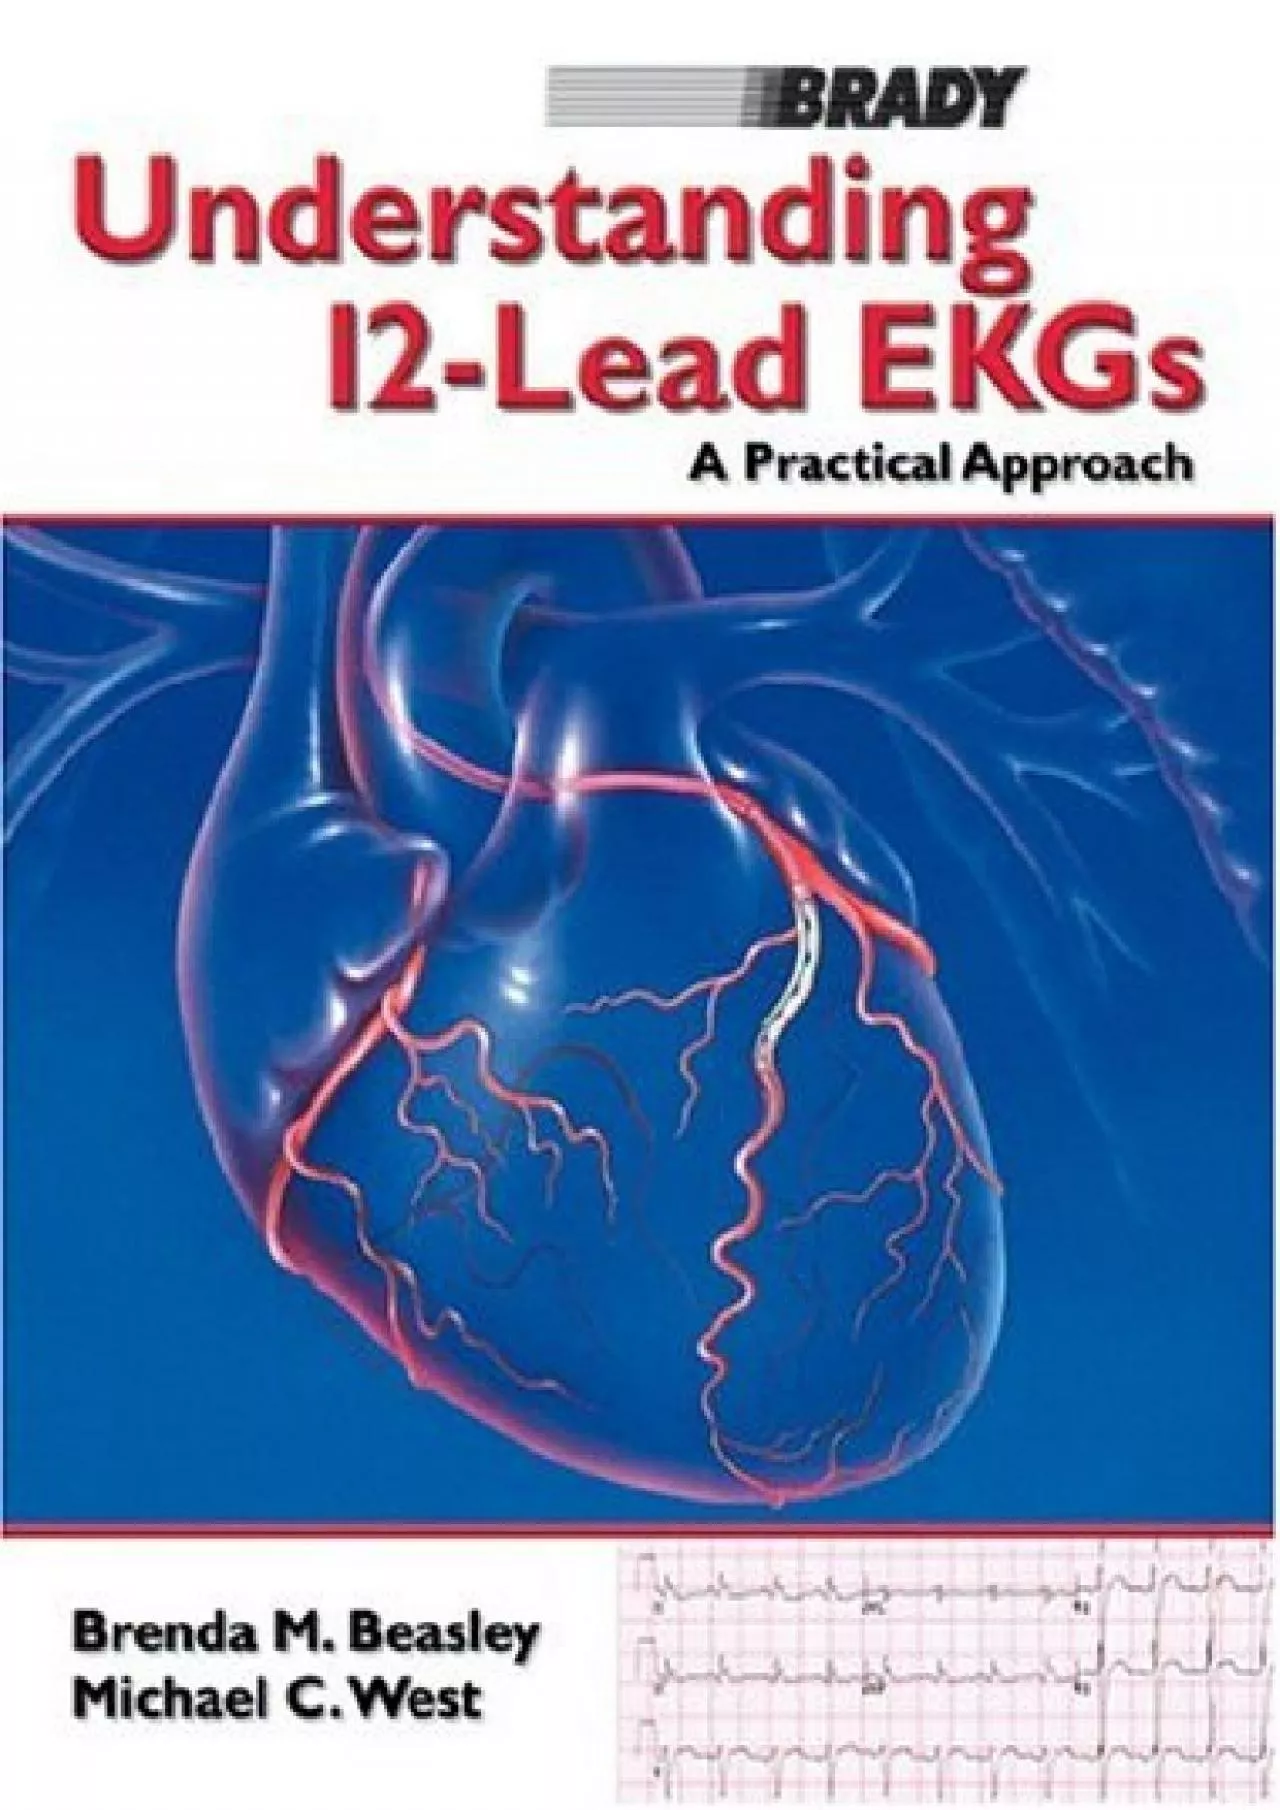 (EBOOK)-Understanding 12-Lead EKGs: A Practical Approach